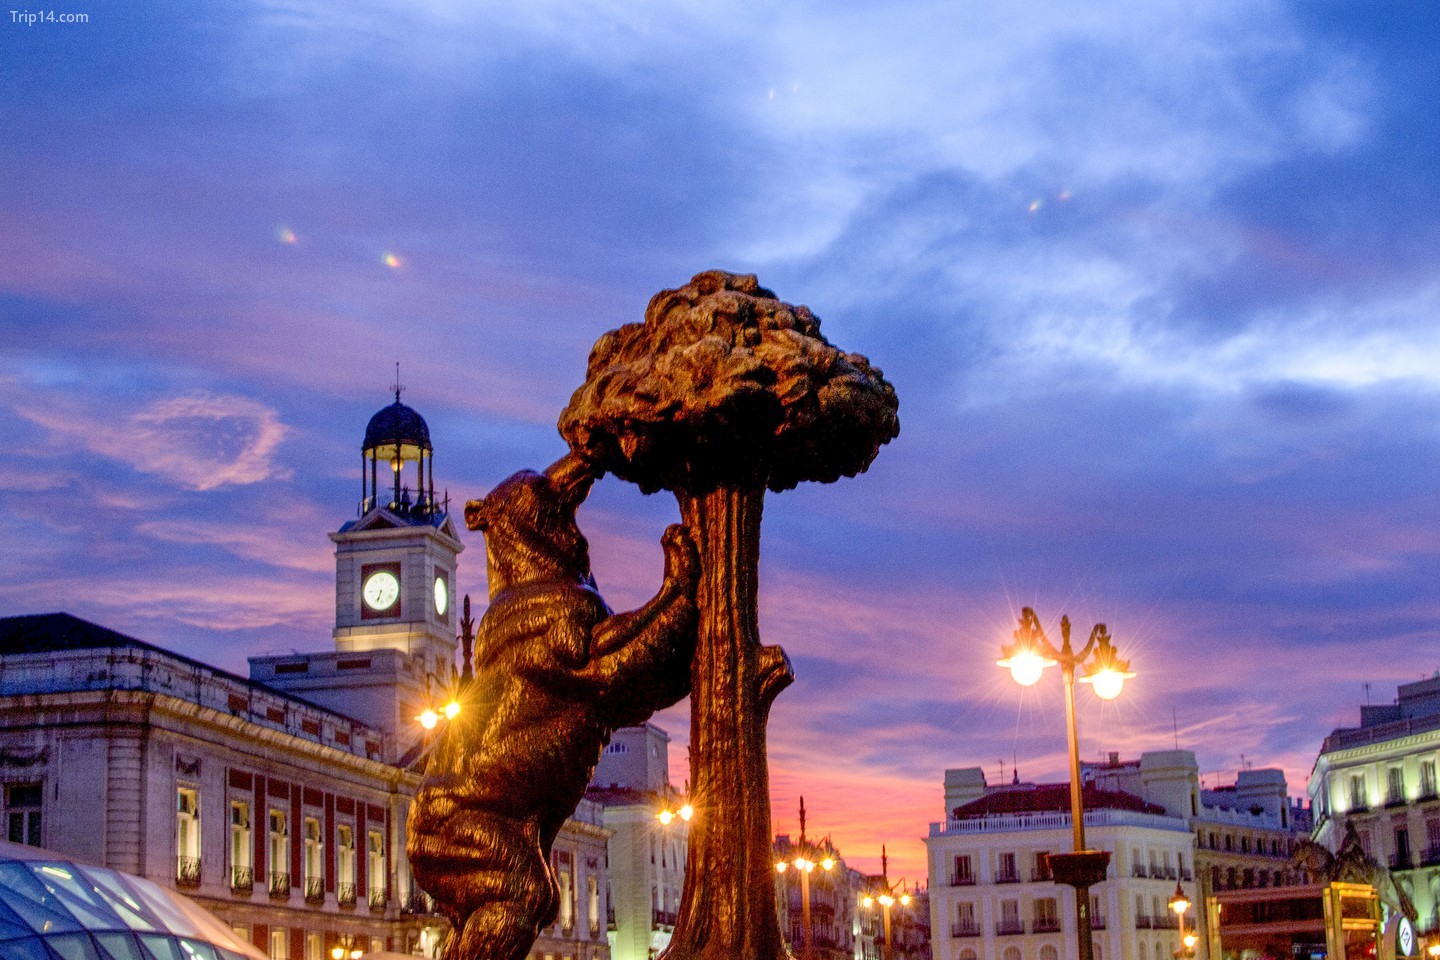 Một bức tượng về cây và gấu Madroño ở Puerta del Sol của Madrid